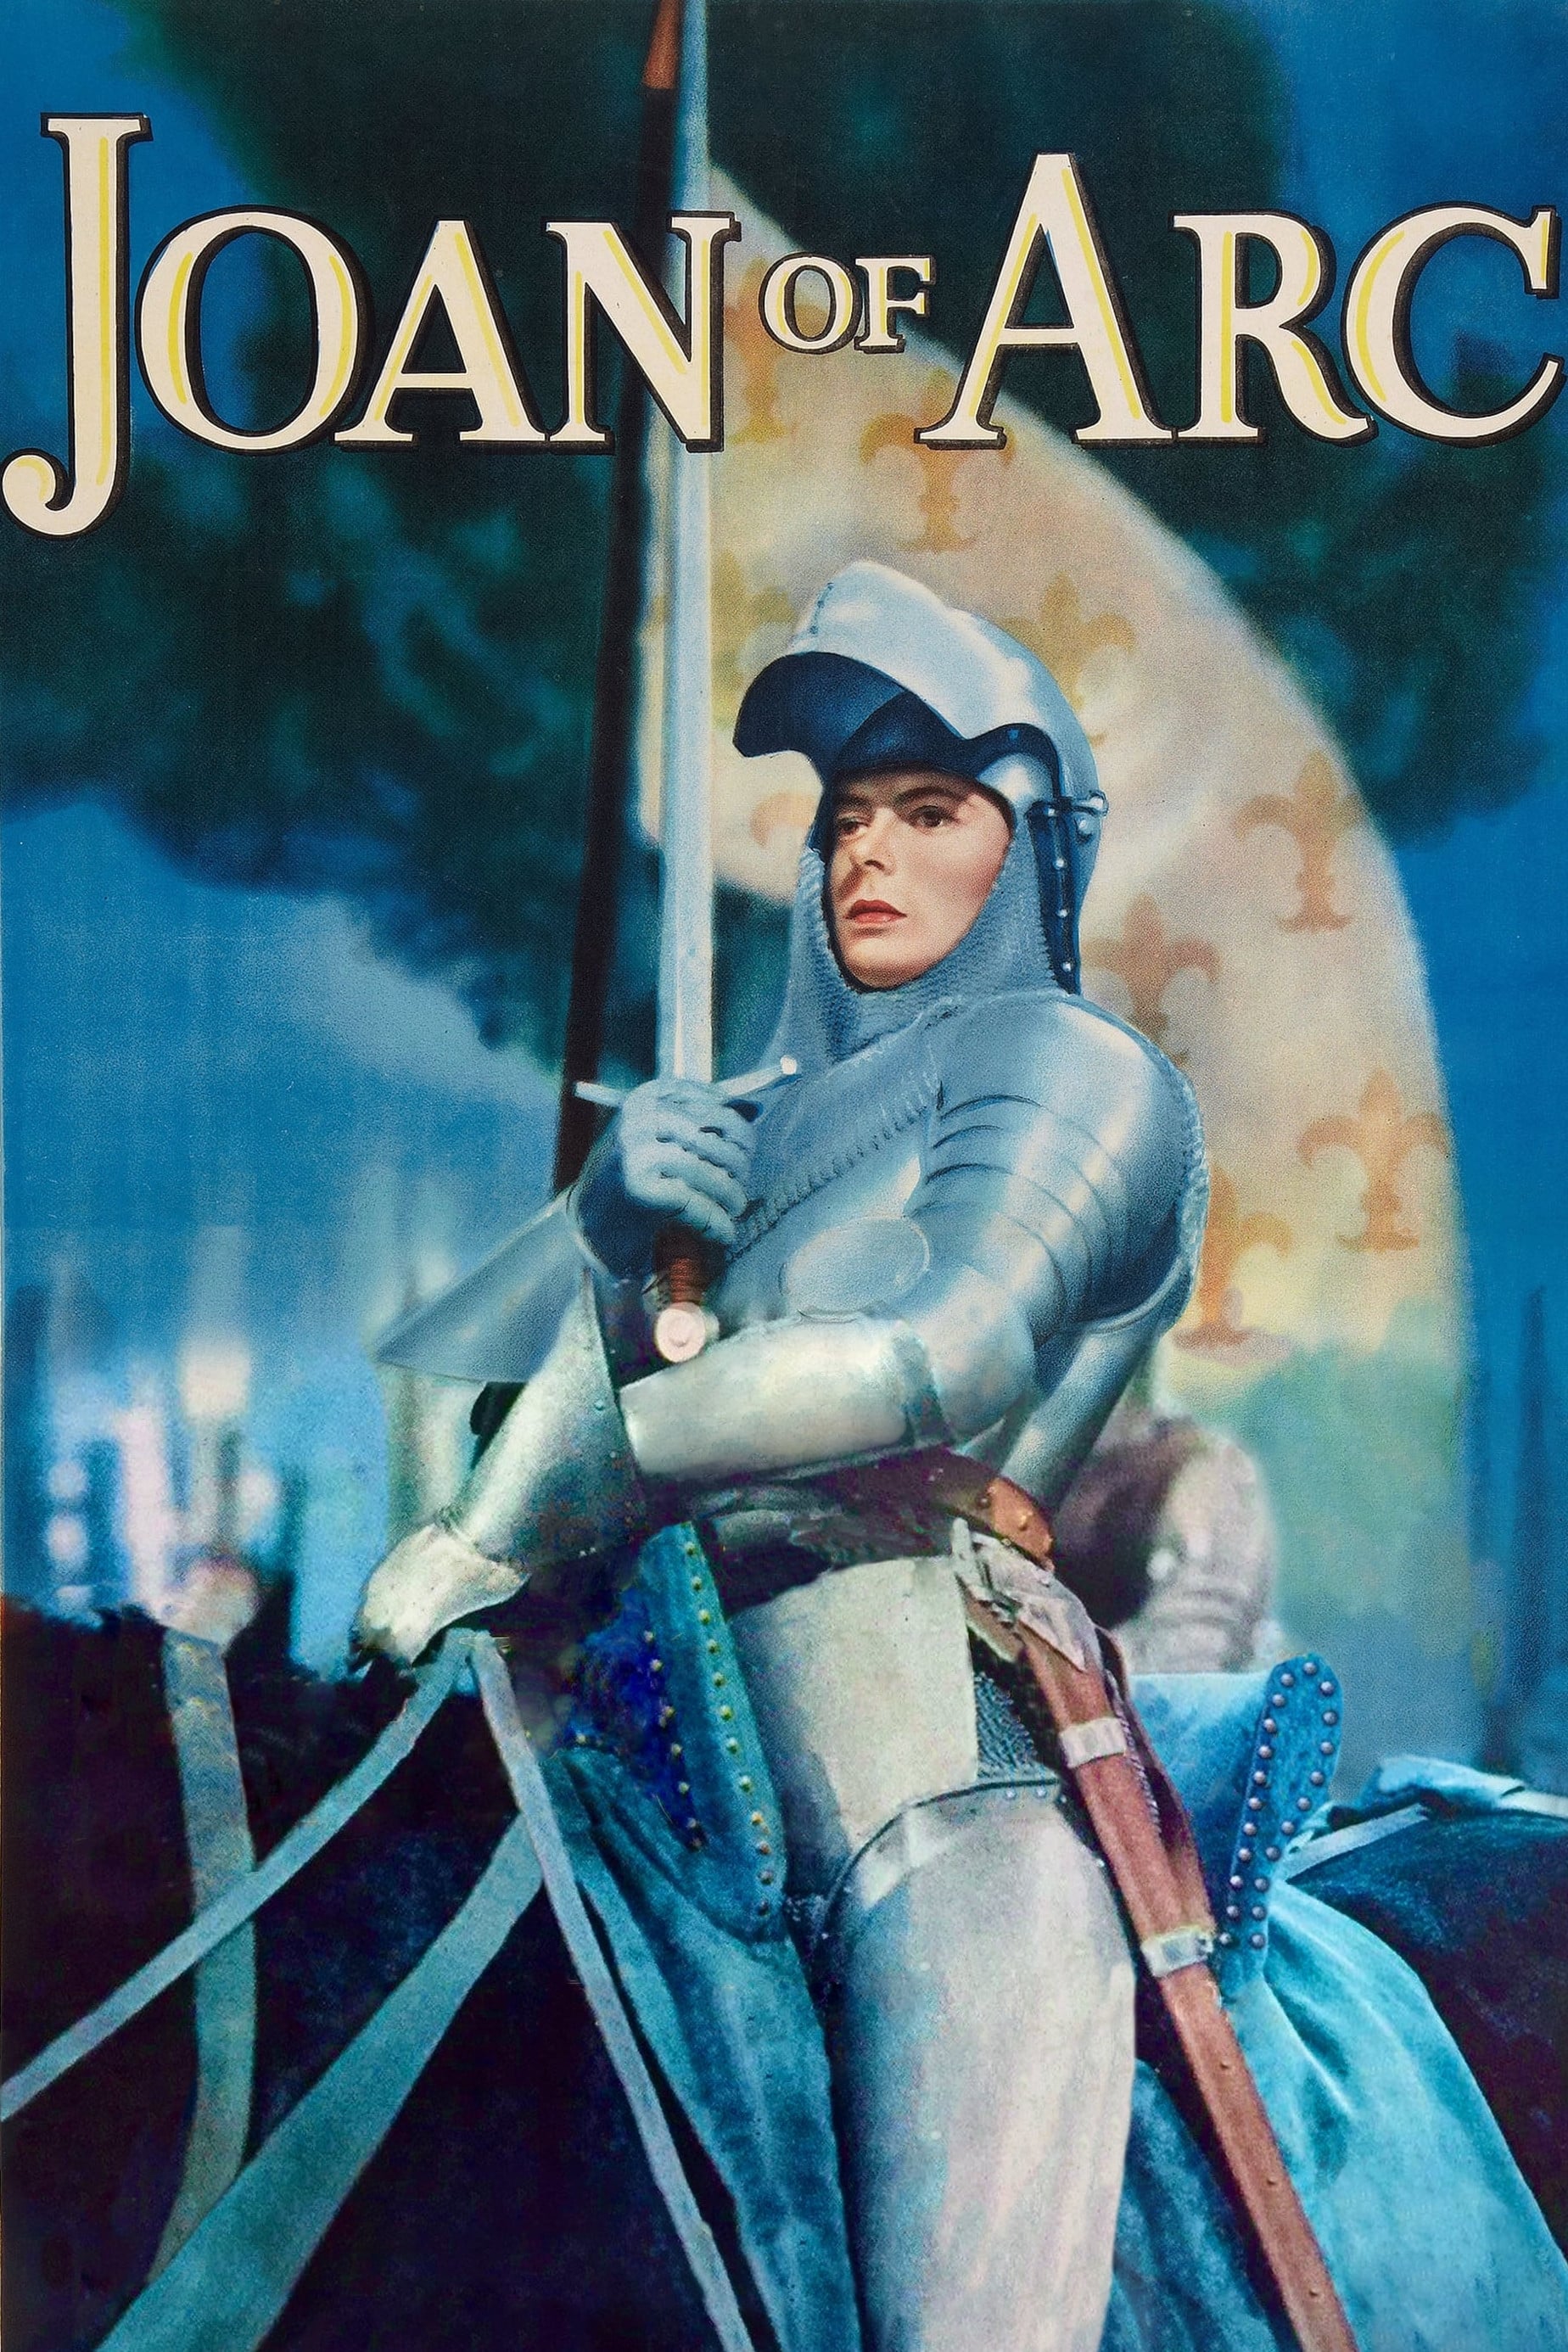 Juana de Arco (1948)